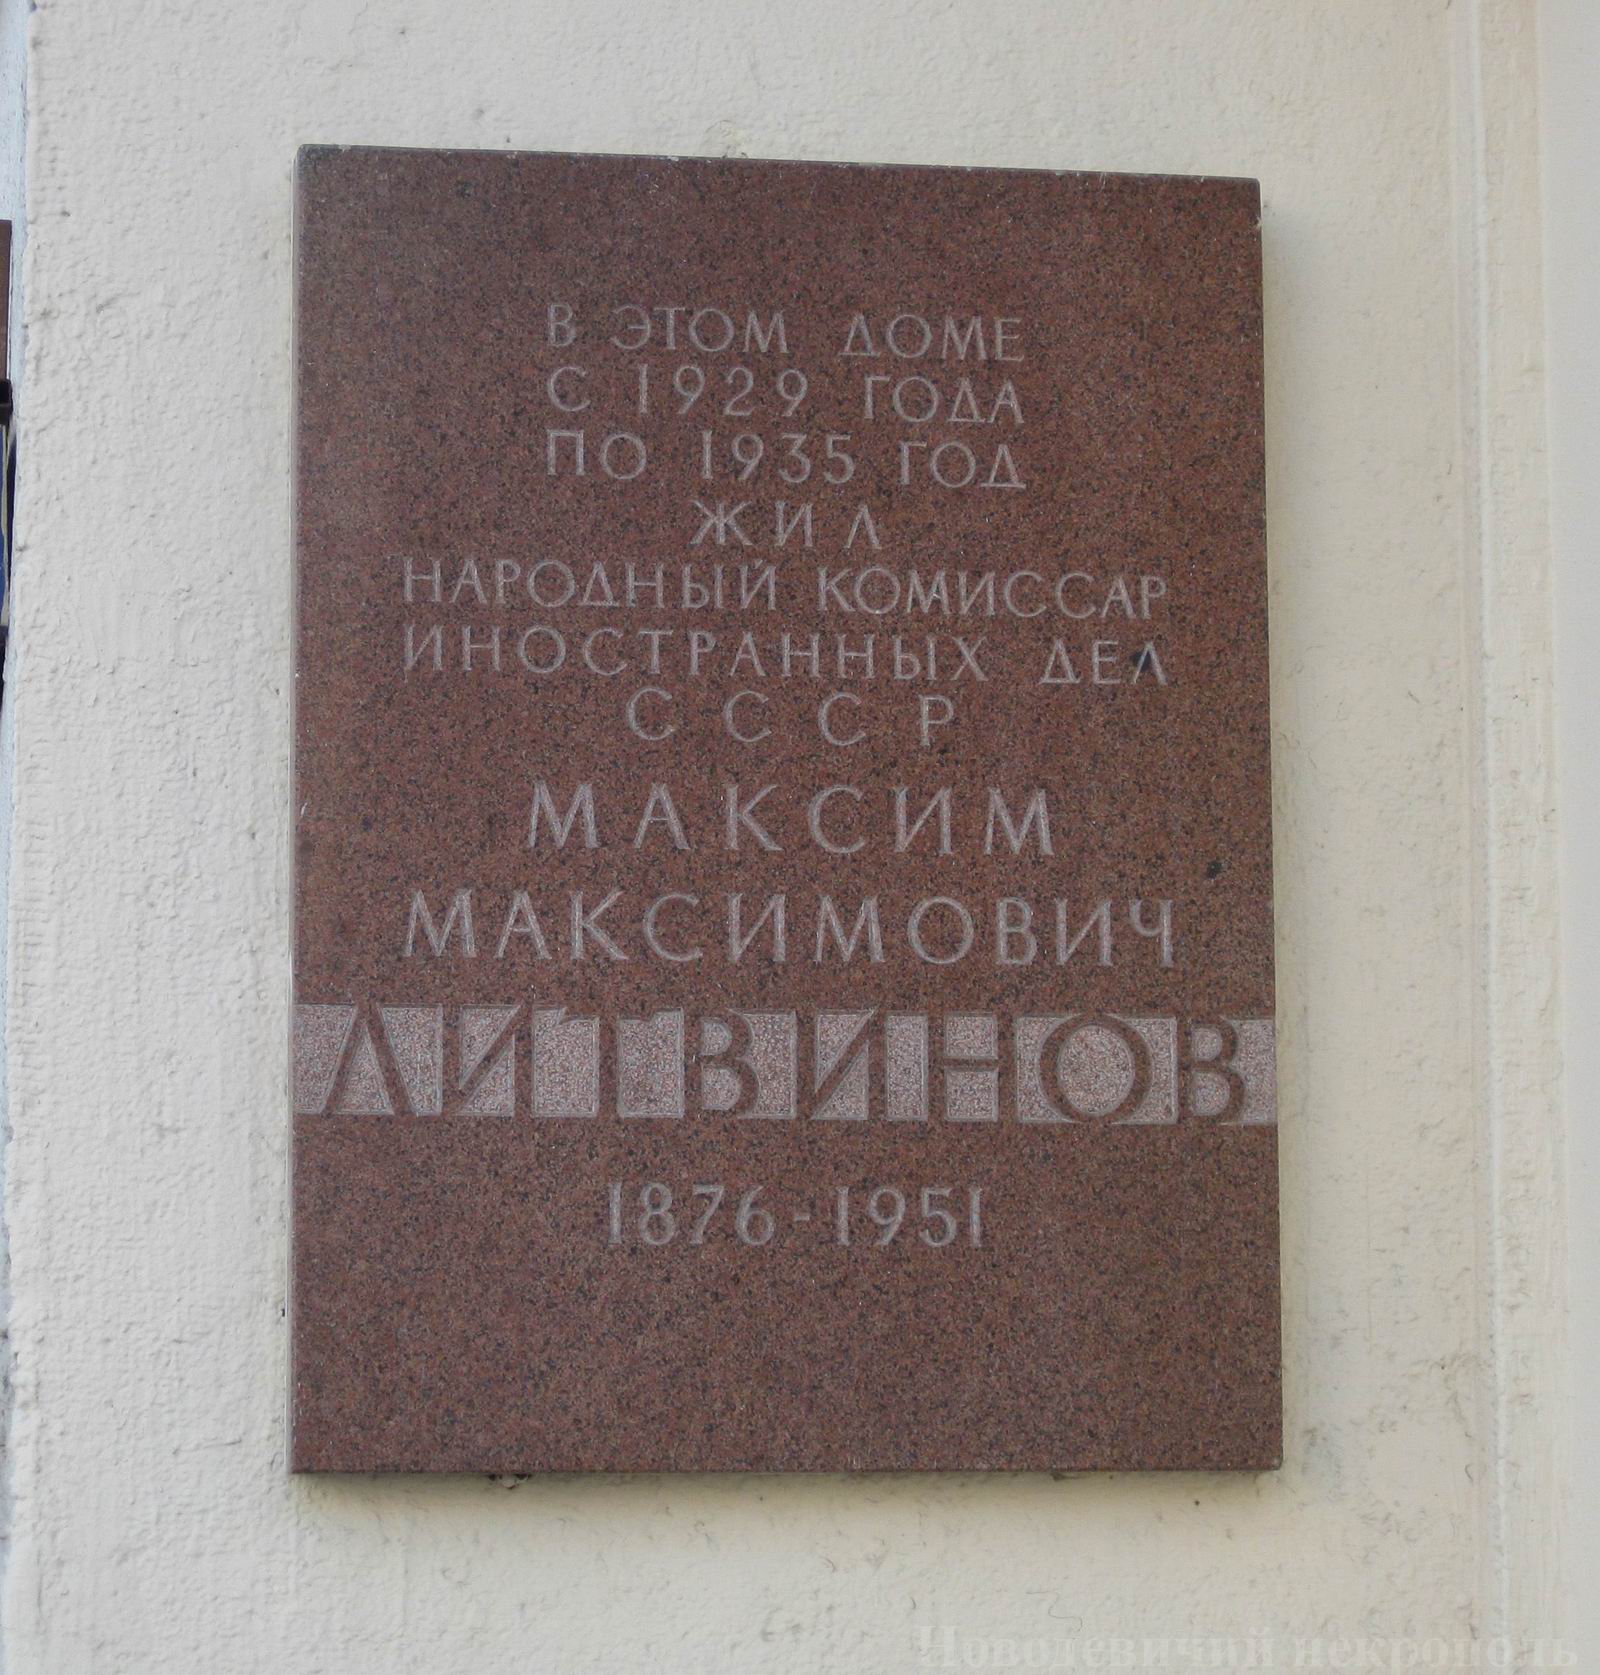 Мемориальная доска Литвину М.М. (1876-1951), арх. Н.А.Ковальчук, в Хоромном тупике, дом 2/6, открыта 22.12.1987.